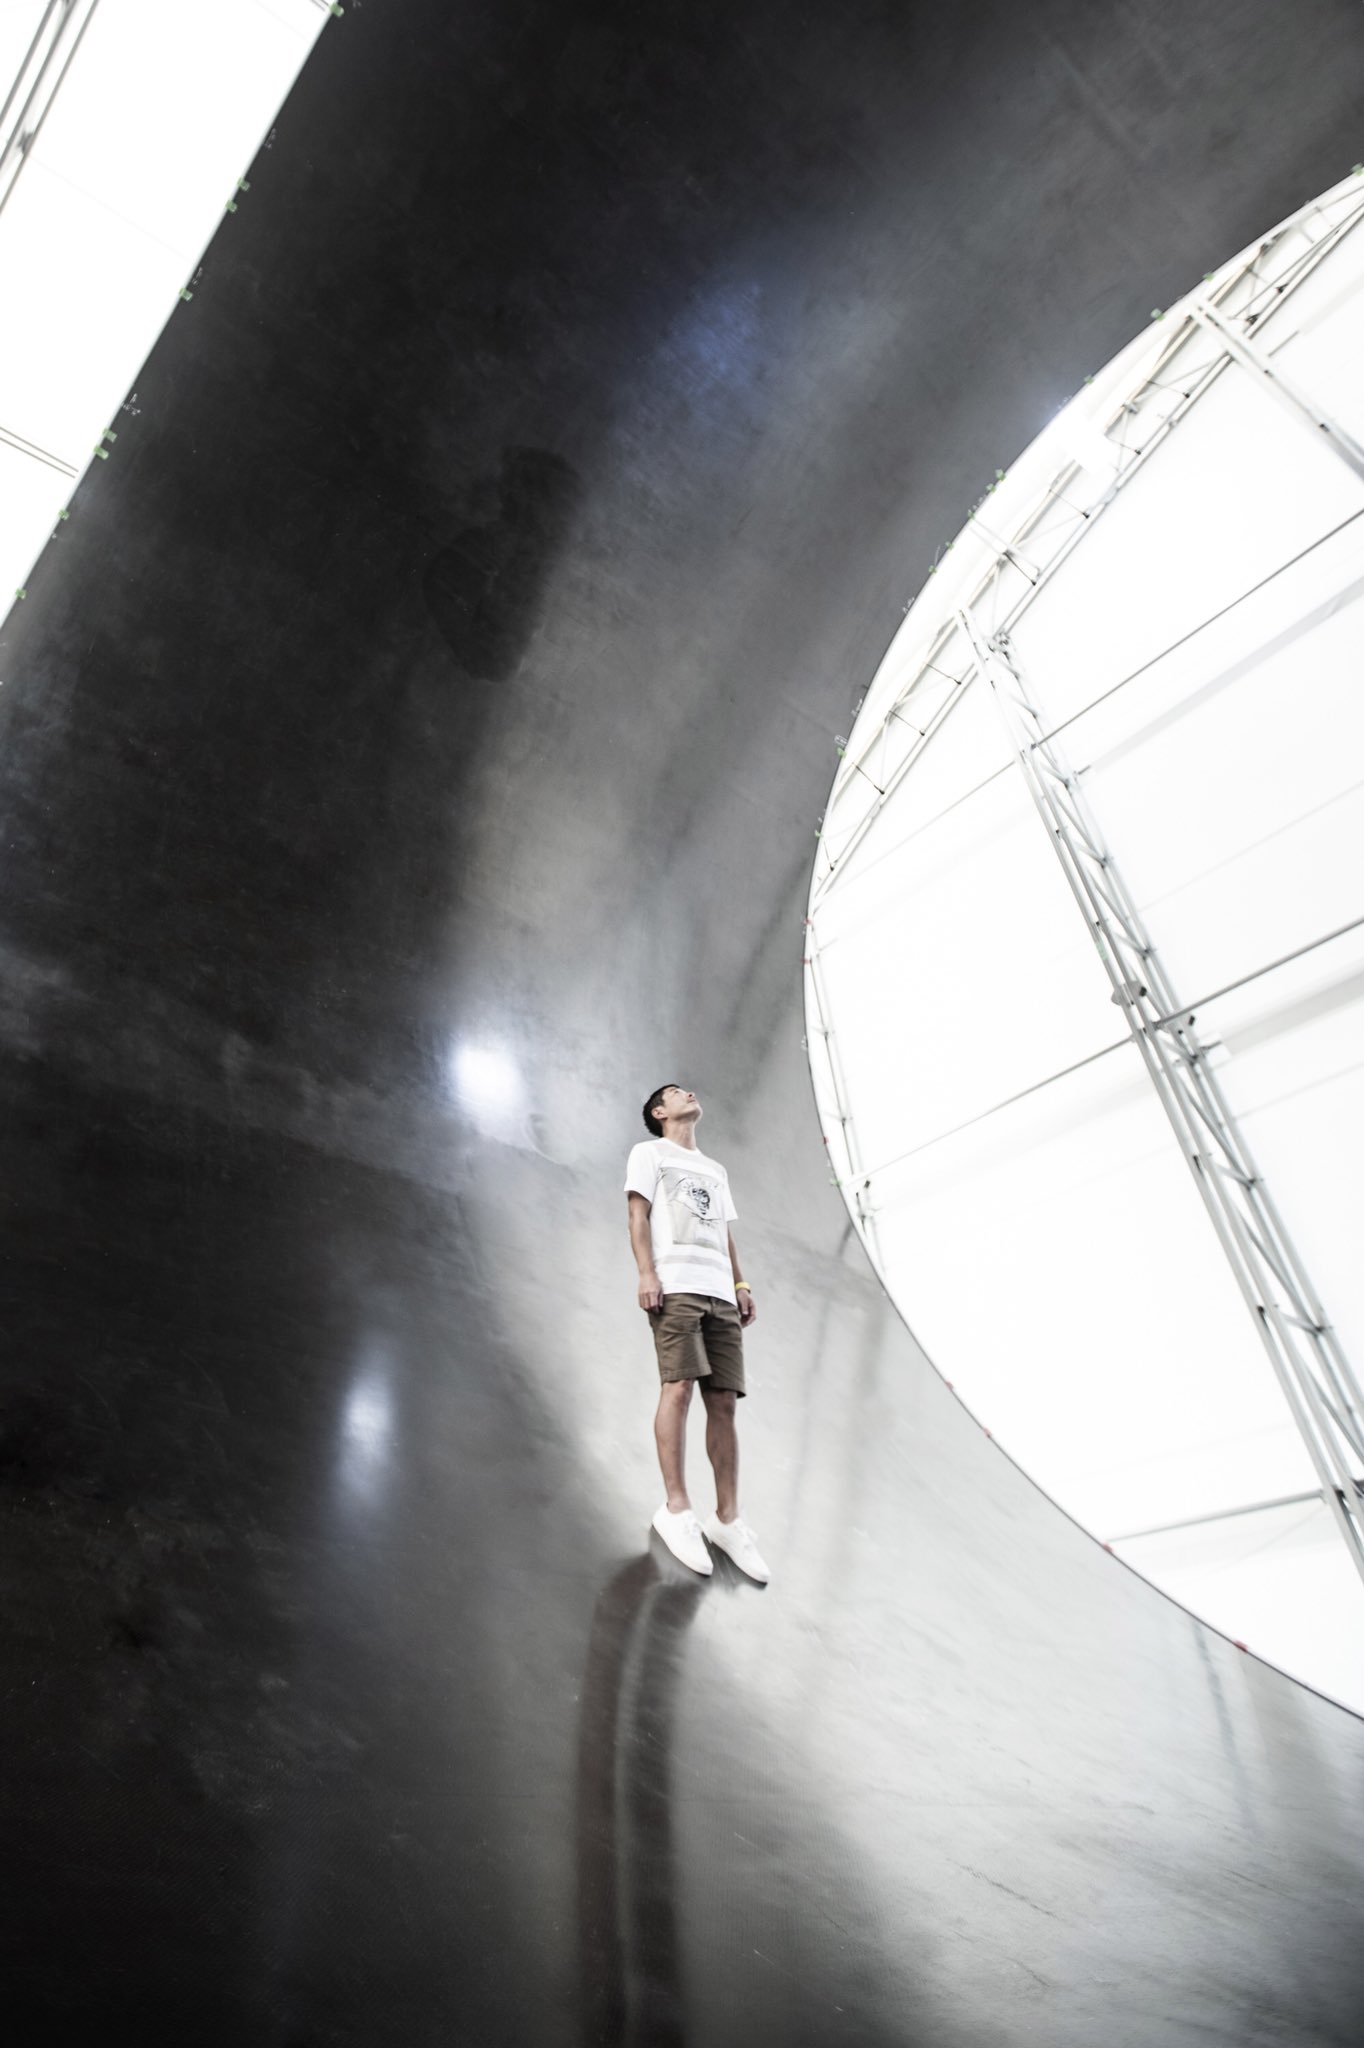 Yusaku Maezawa stands on first BFR composite piece (Yusaku Maezawa)